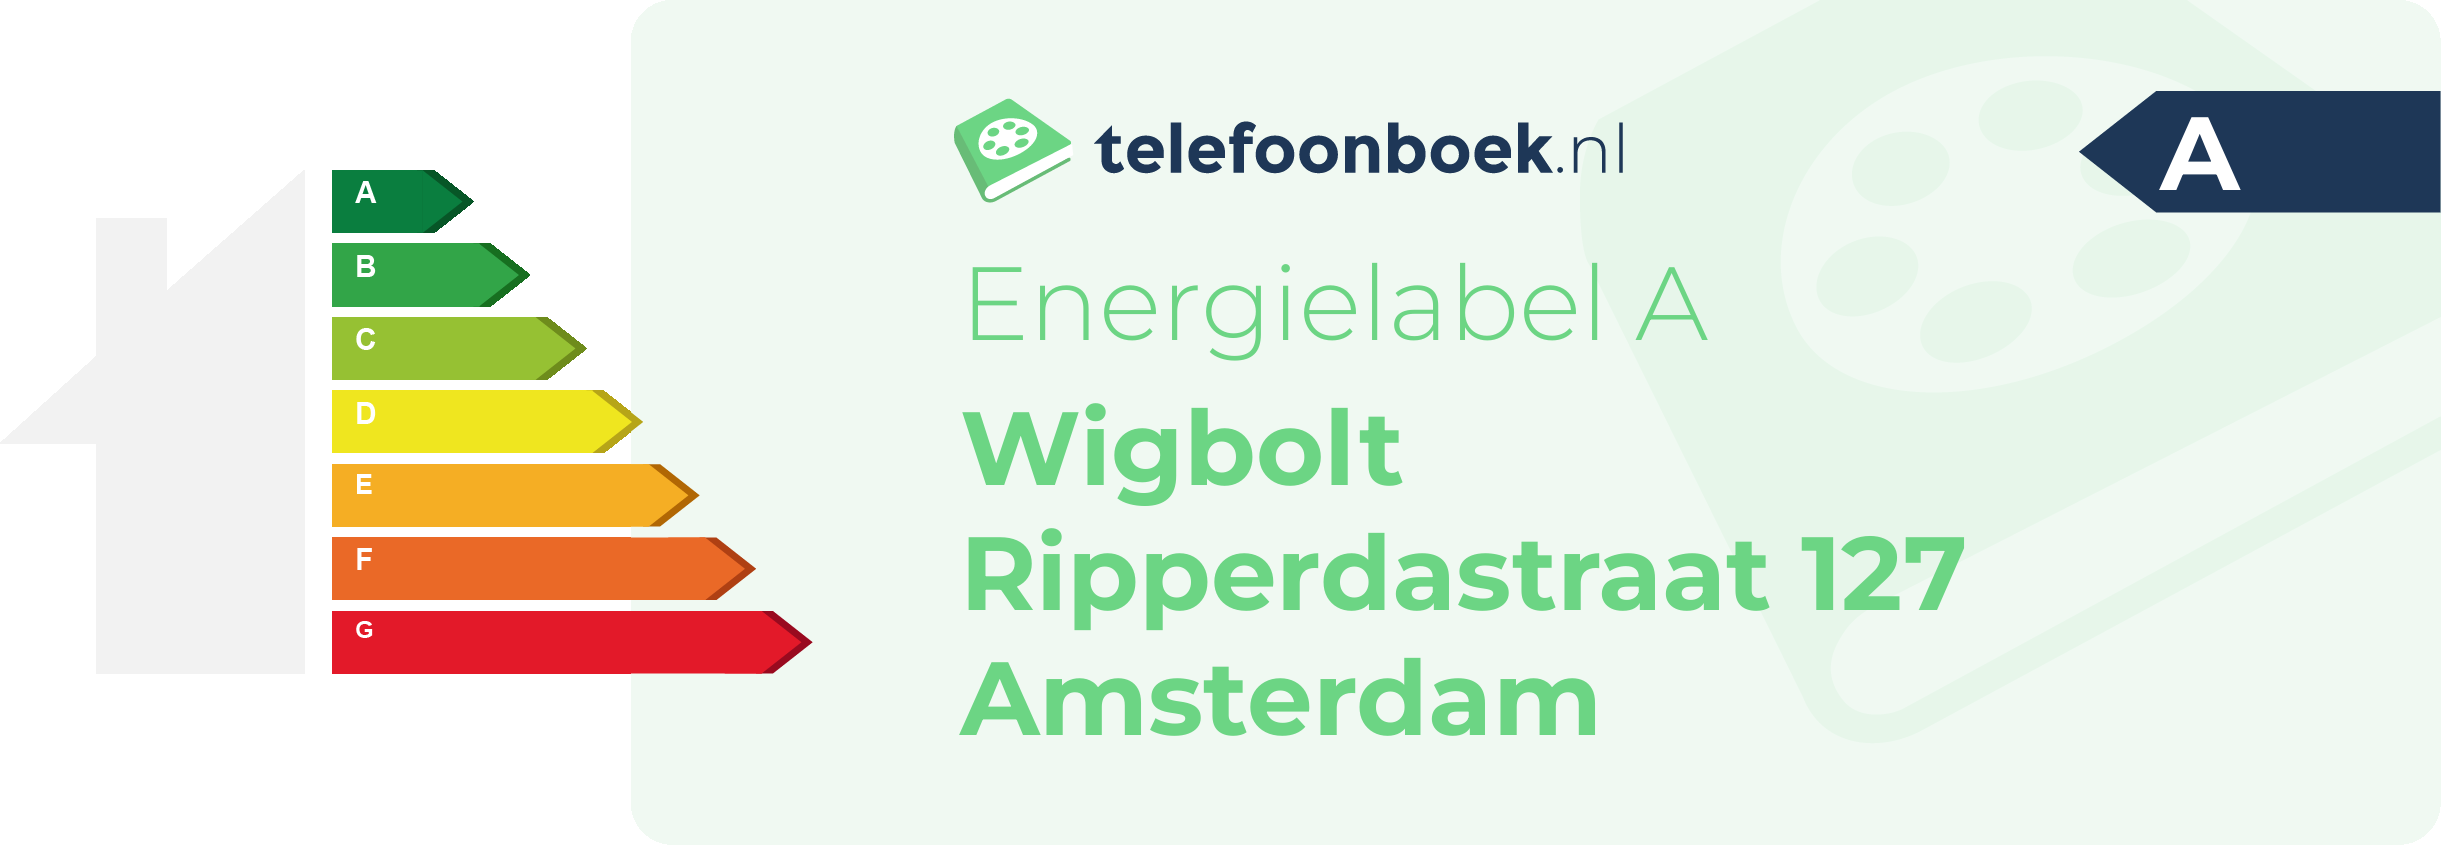 Energielabel Wigbolt Ripperdastraat 127 Amsterdam